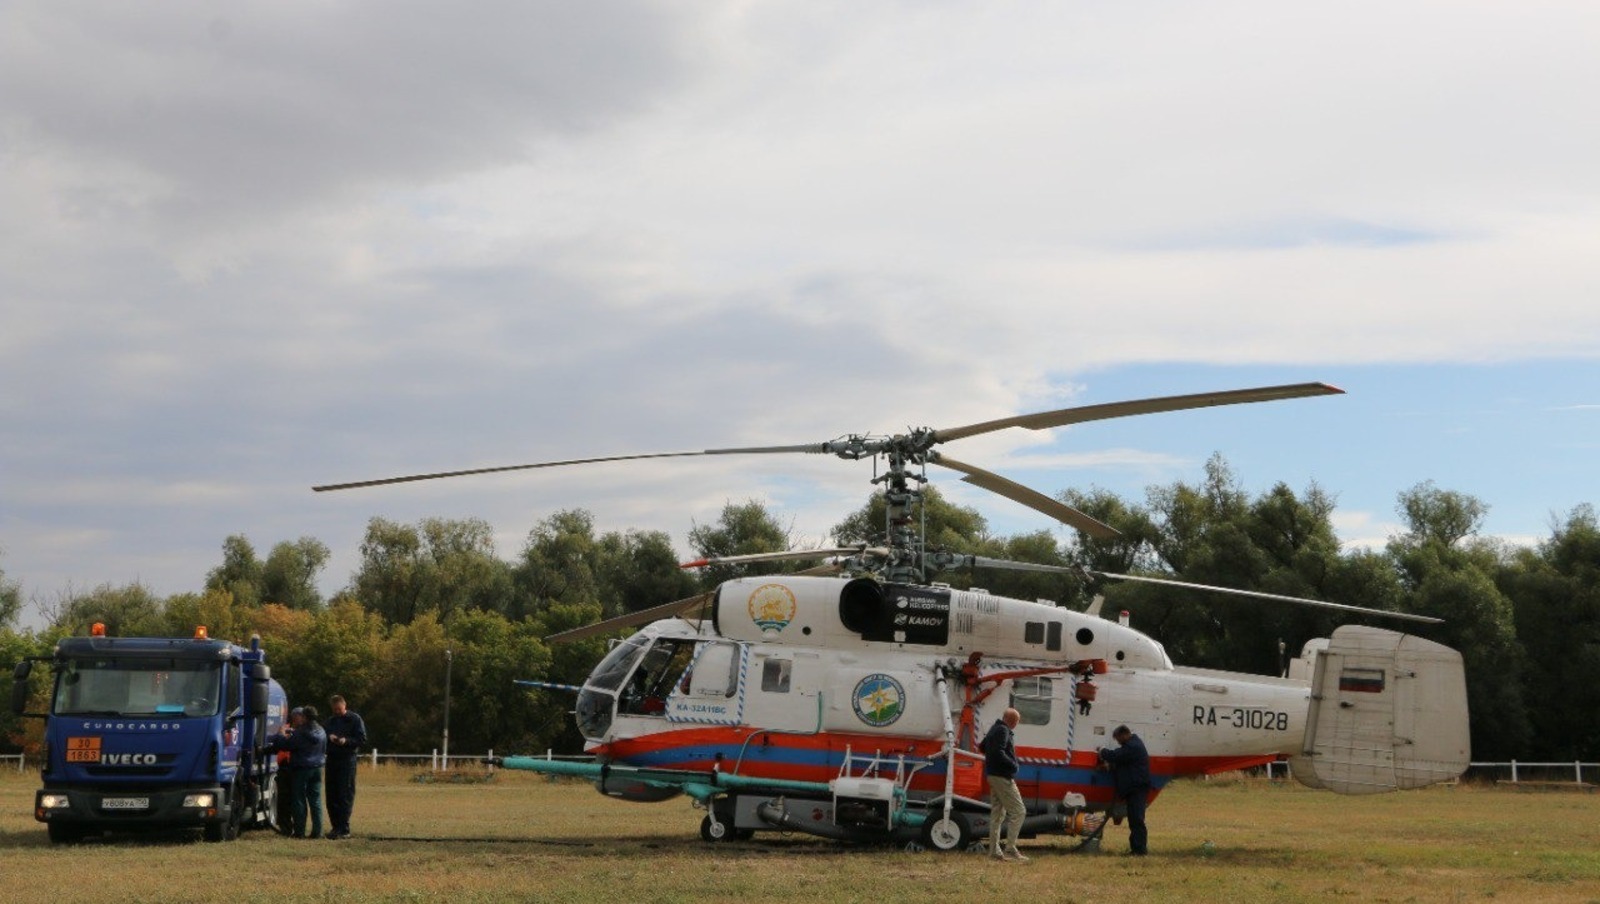 МЧС Башкирии убедились в отсутствии лесных пожаров с помощью вертолета